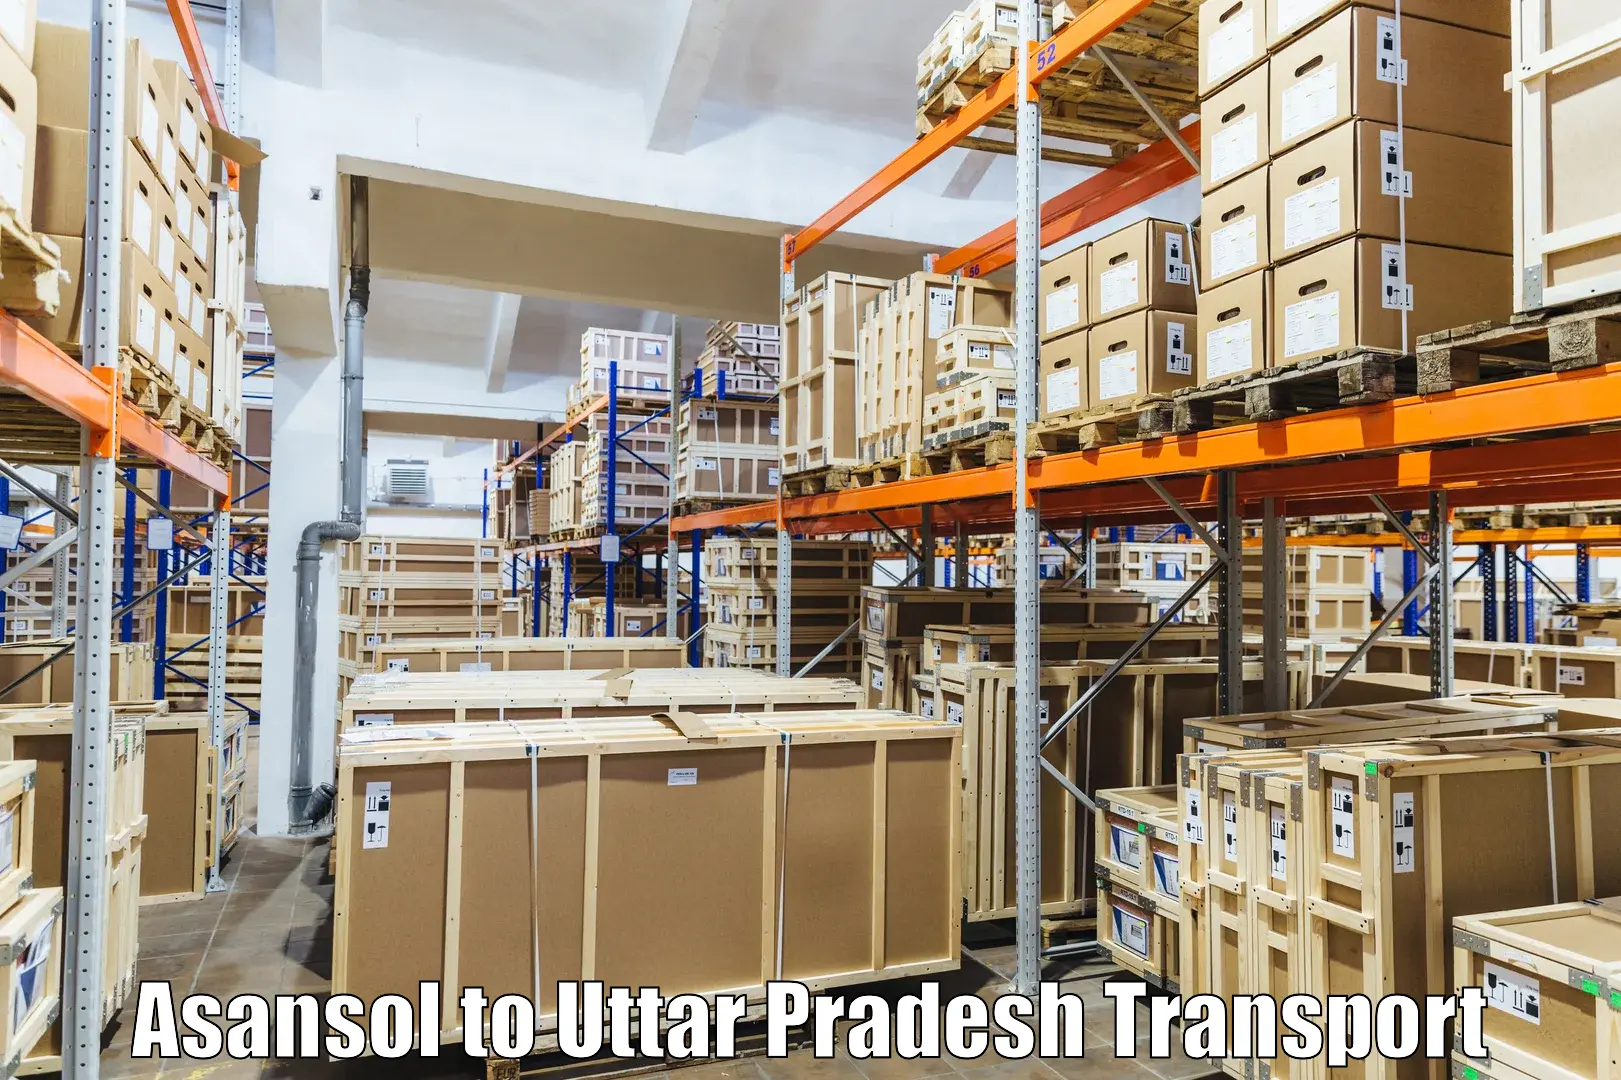 Transportation solution services Asansol to Thakurdwara